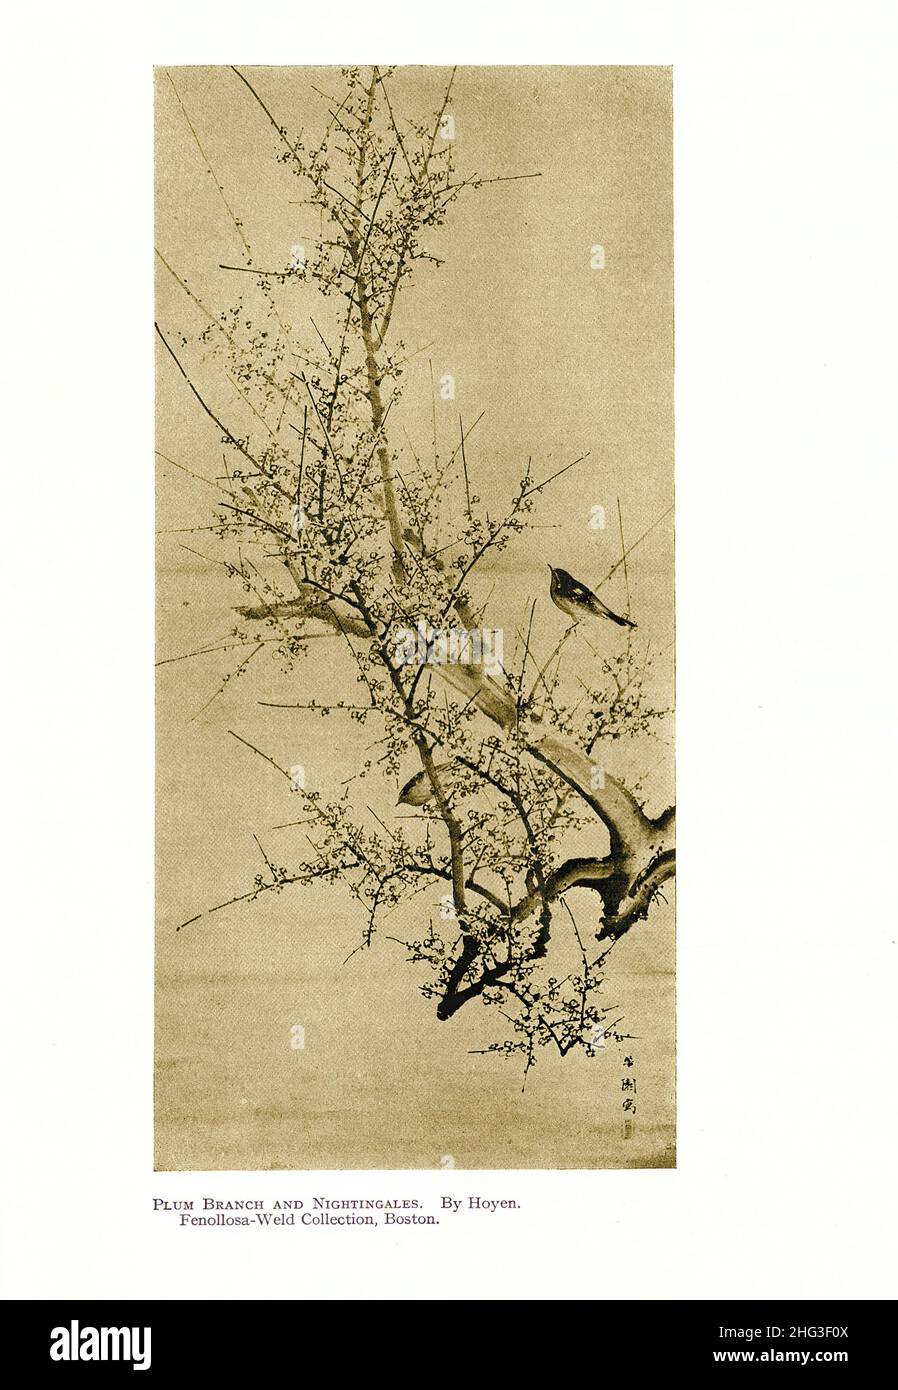 Japanische Malerei des 19th. Jahrhunderts: Pflaumenzweig und Nachtigallen. Von Hoyen. Reproduktion der Buchdarstellung von 1912 Stockfoto